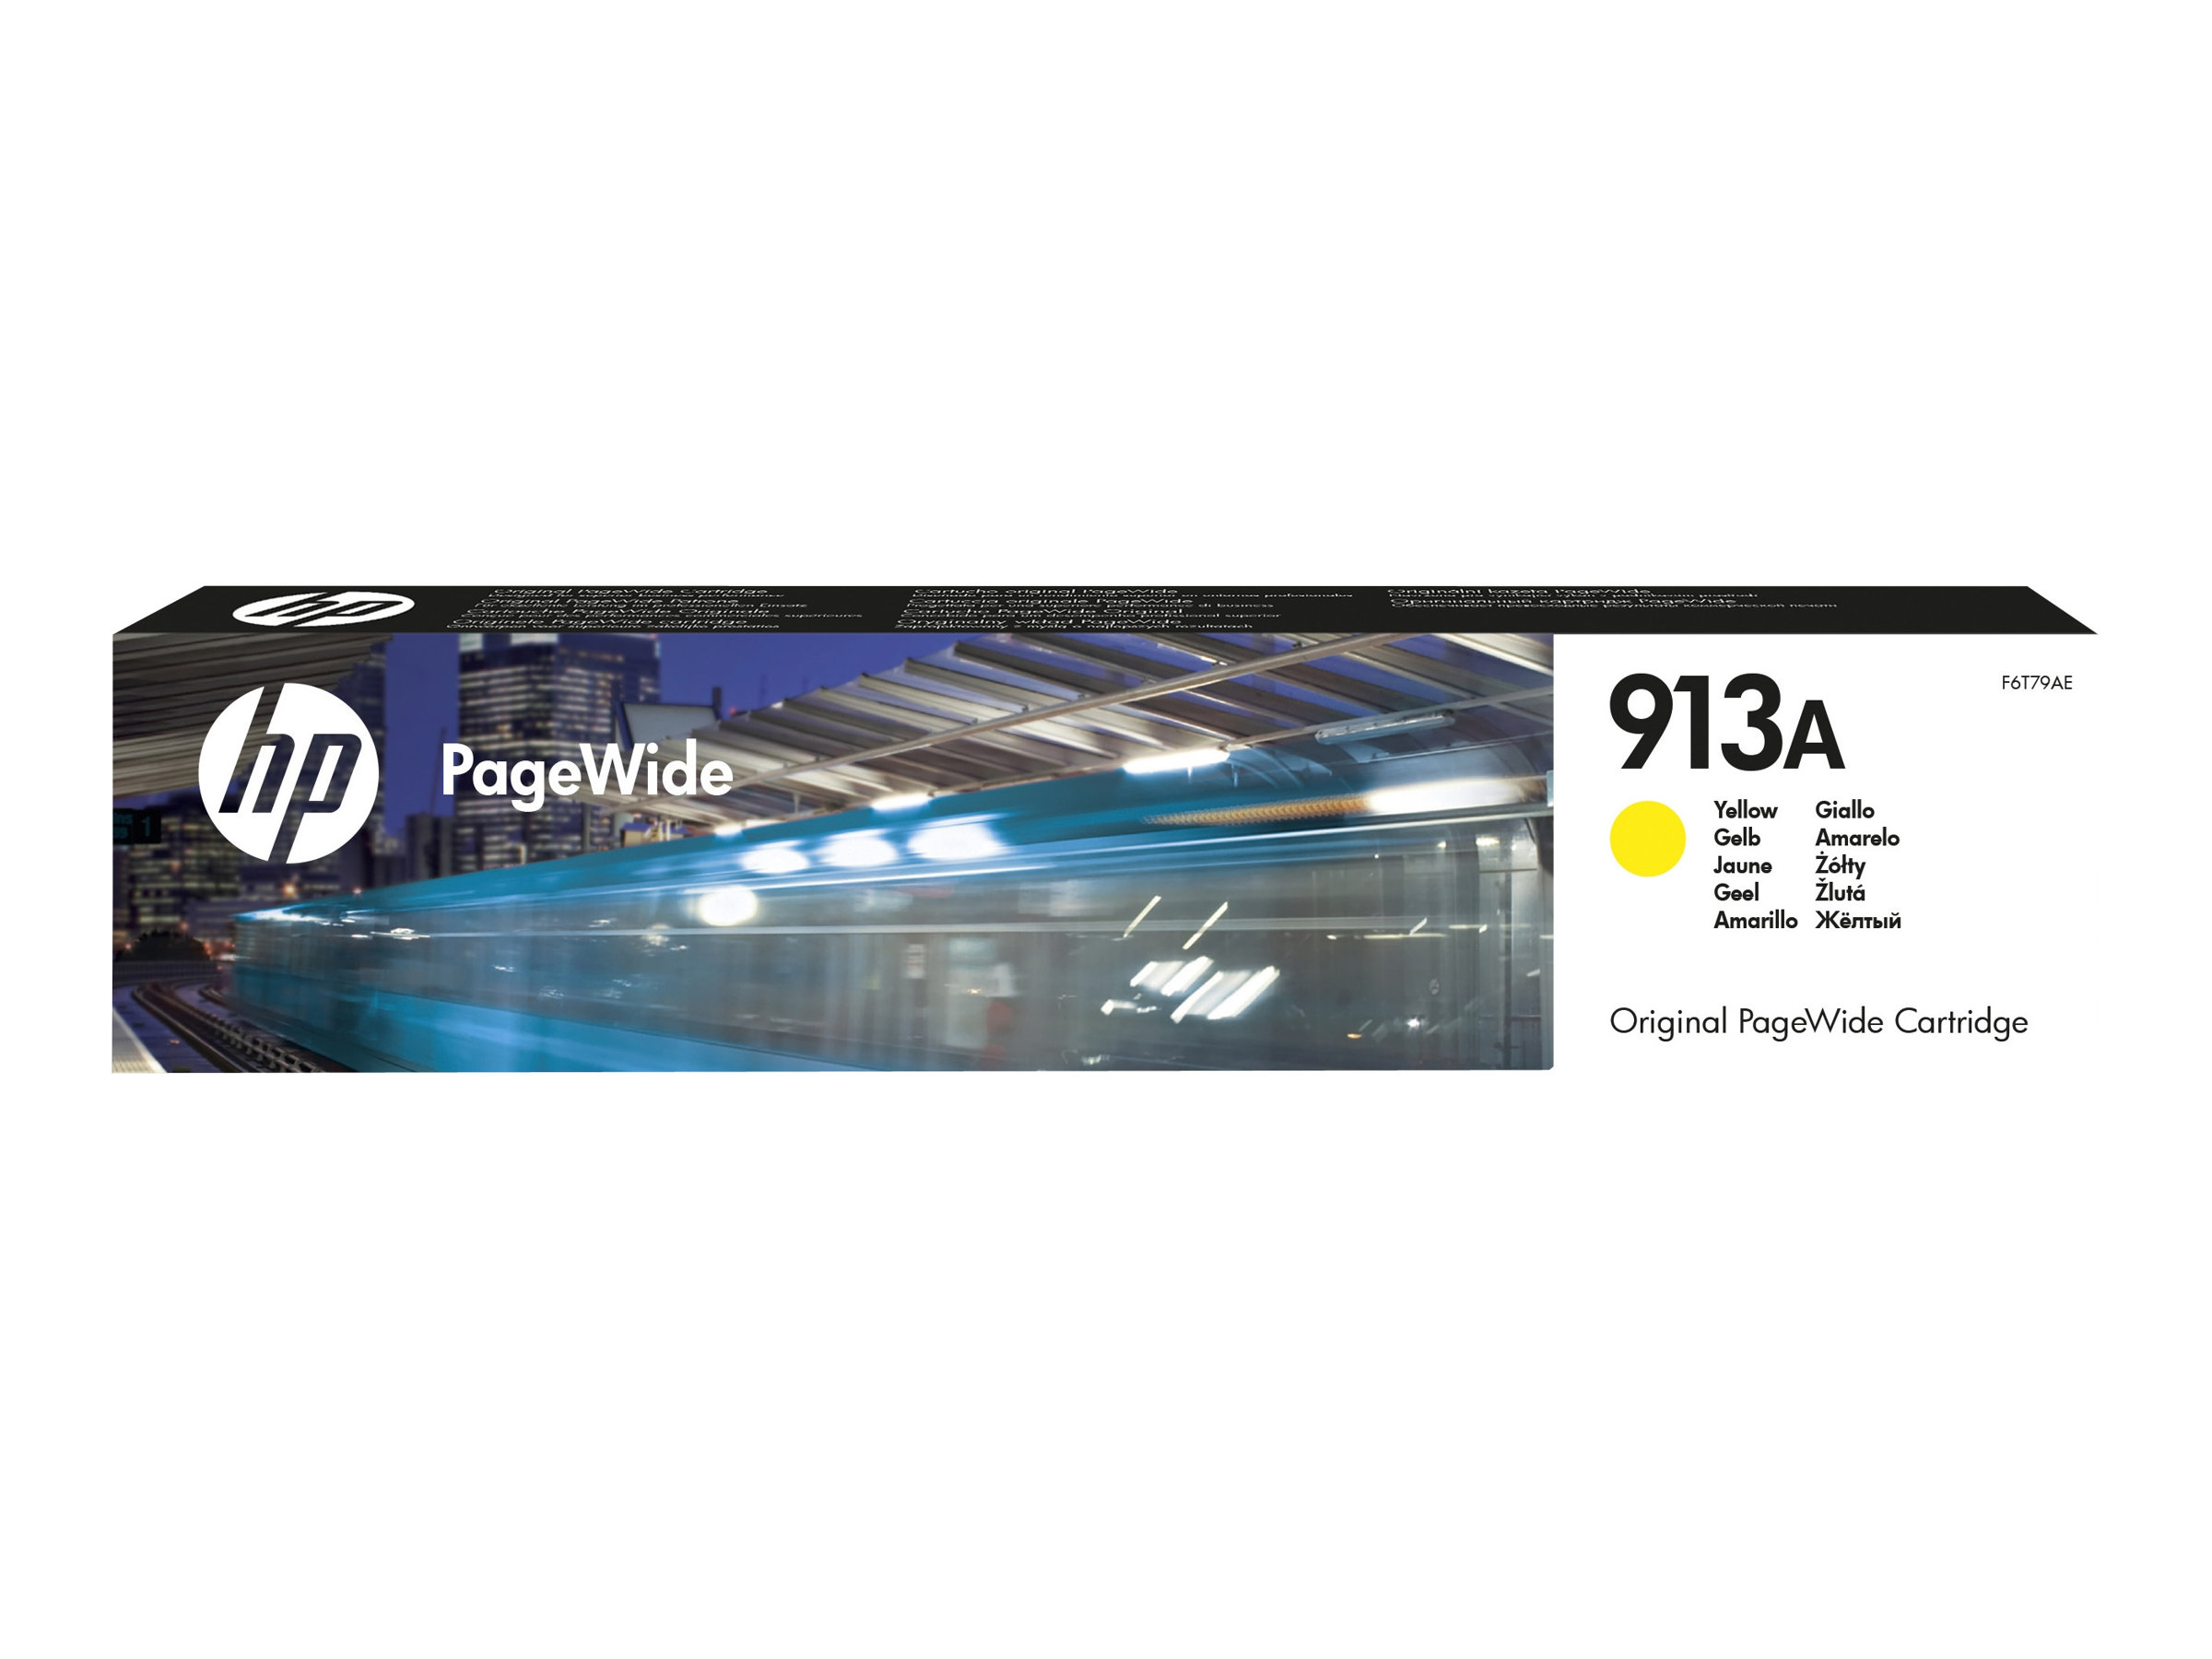 HP 913A - Jaune - original - PageWide - cartouche d'encre - pour PageWide 352, 377, MFP 377; PageWide Pro 452, 477, 552, 577, MFP 477 - F6T79AE - Cartouches d'imprimante